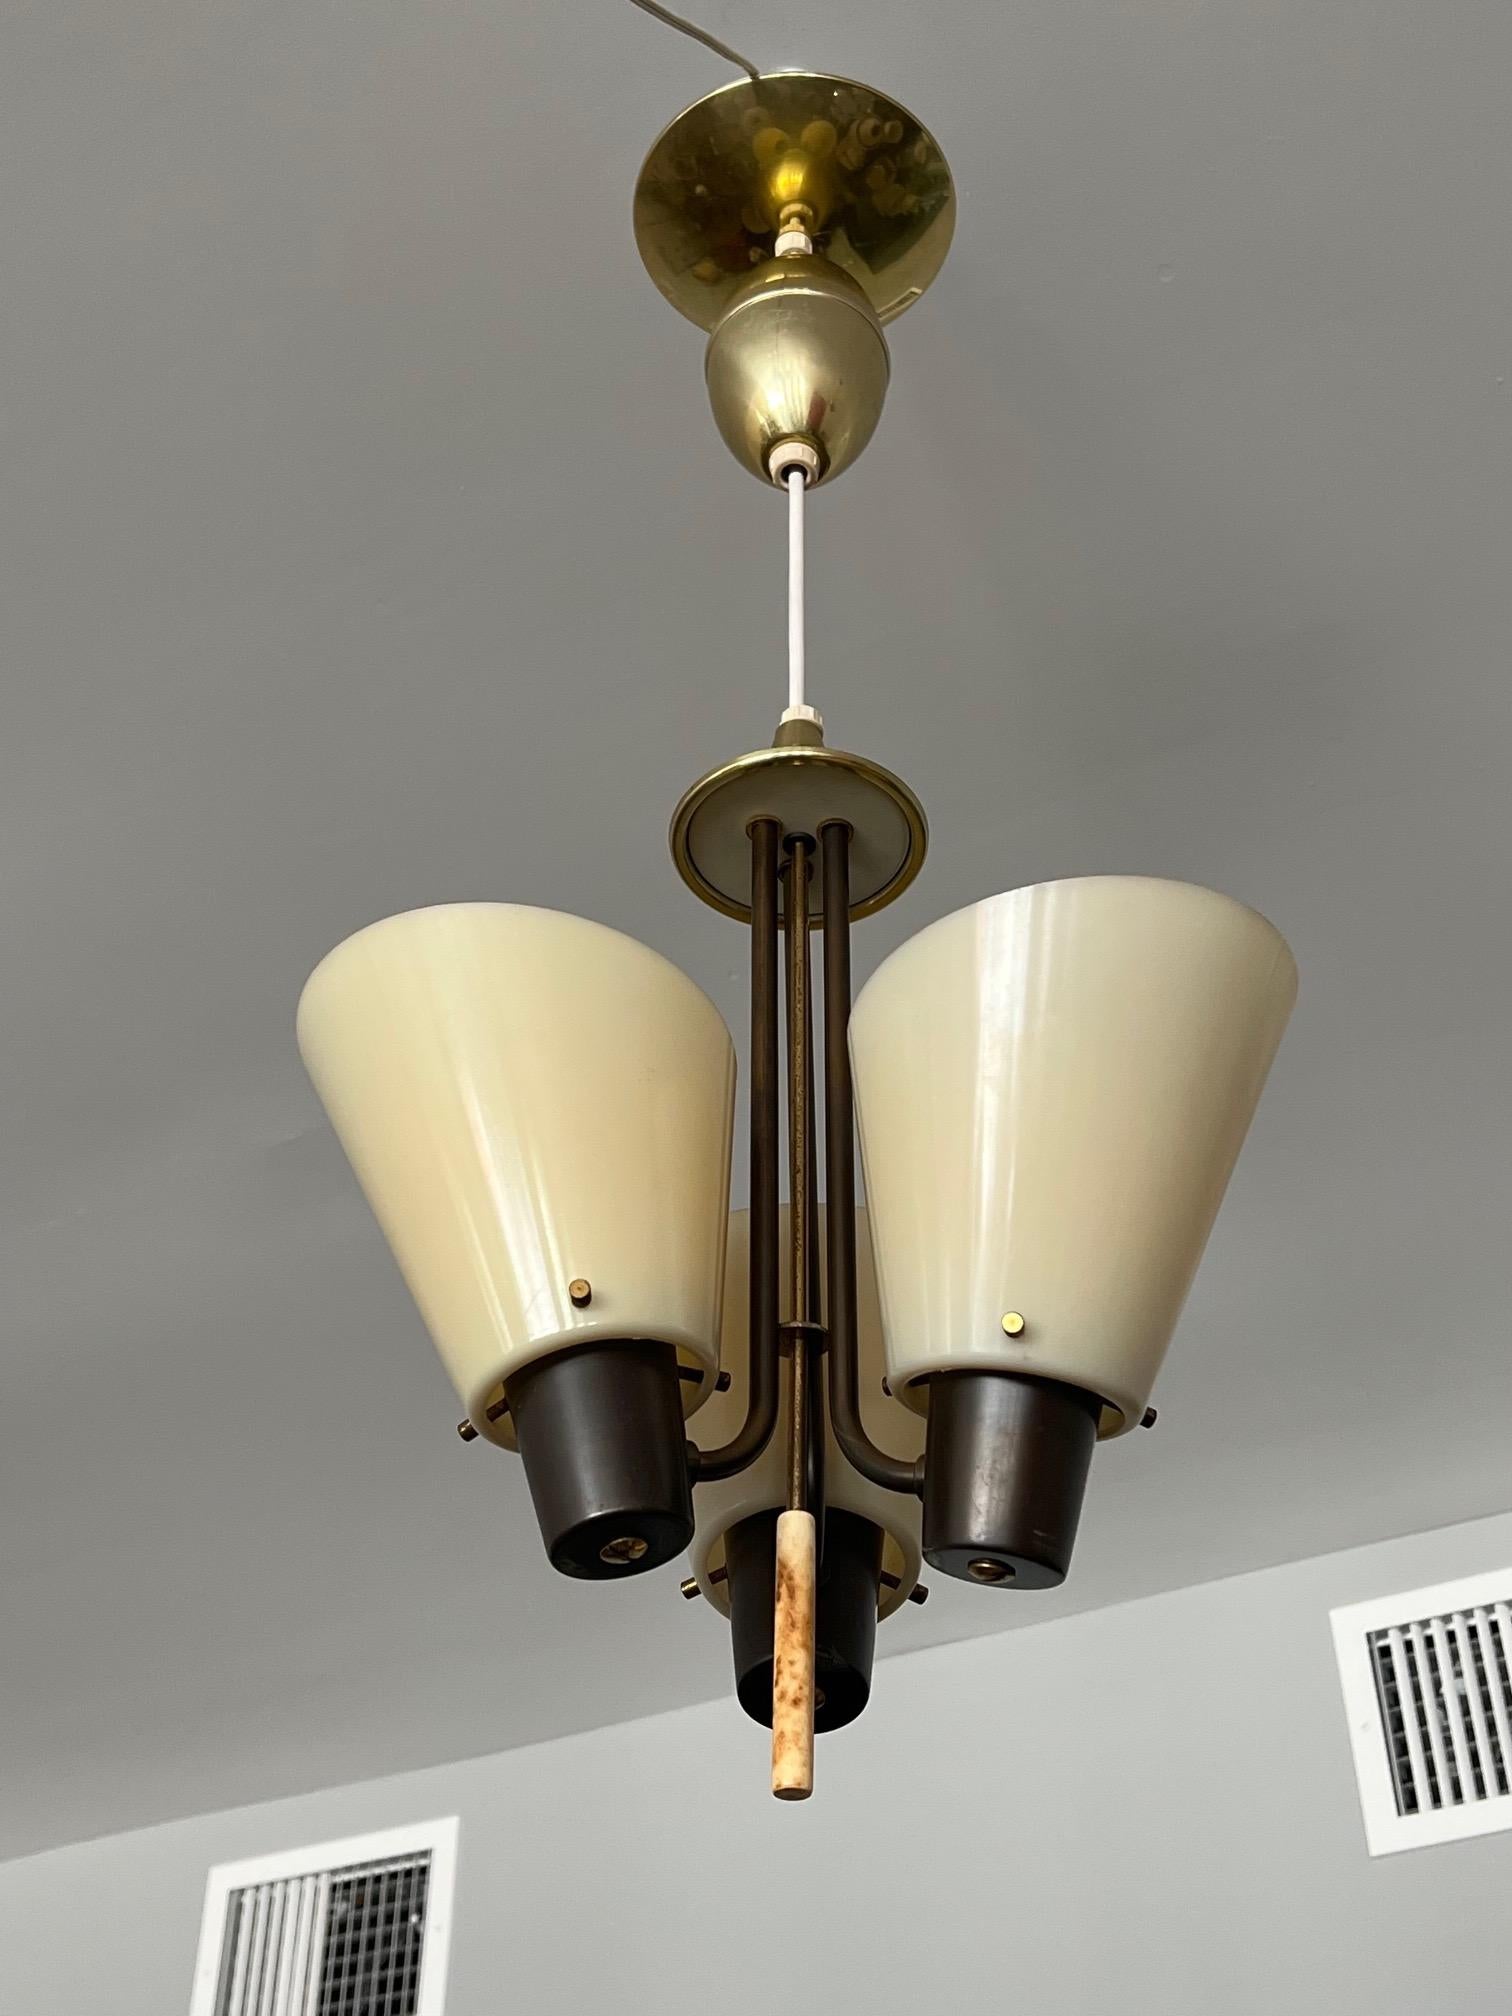 Ungewöhnlicher Lightolier-Kronleuchter mit einem echten Mid-Century-Stil, Plexiglasschirme, Maße: ca. 13 Zoll Durchmesser, Höhe 31 Zoll